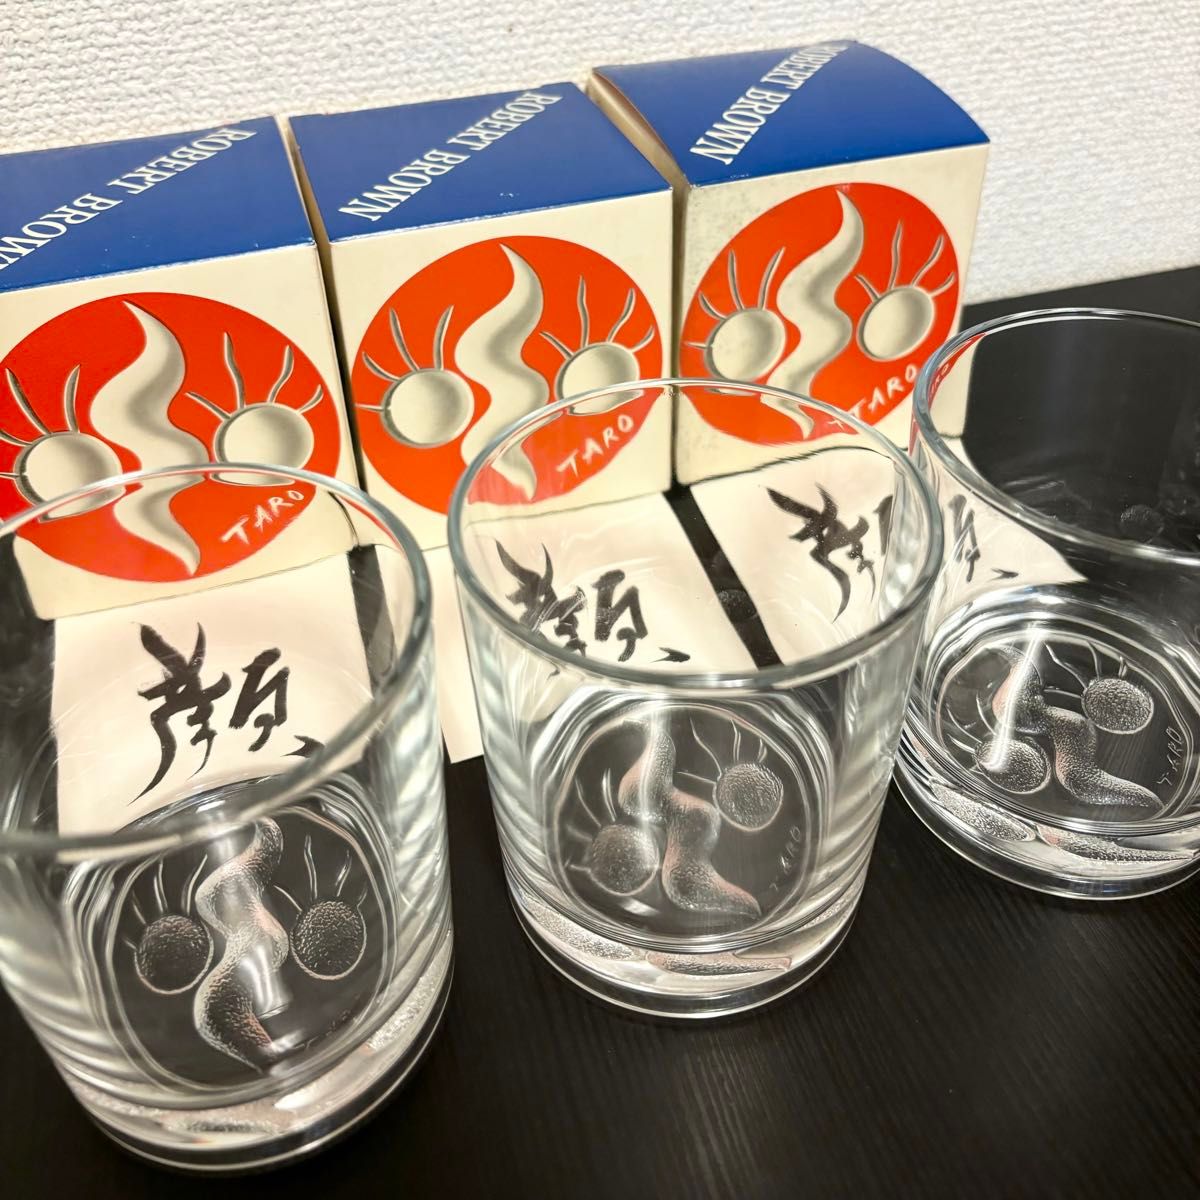 送料無料 箱付き 未使用 3個セット 岡本太郎 顔のグラス グラス